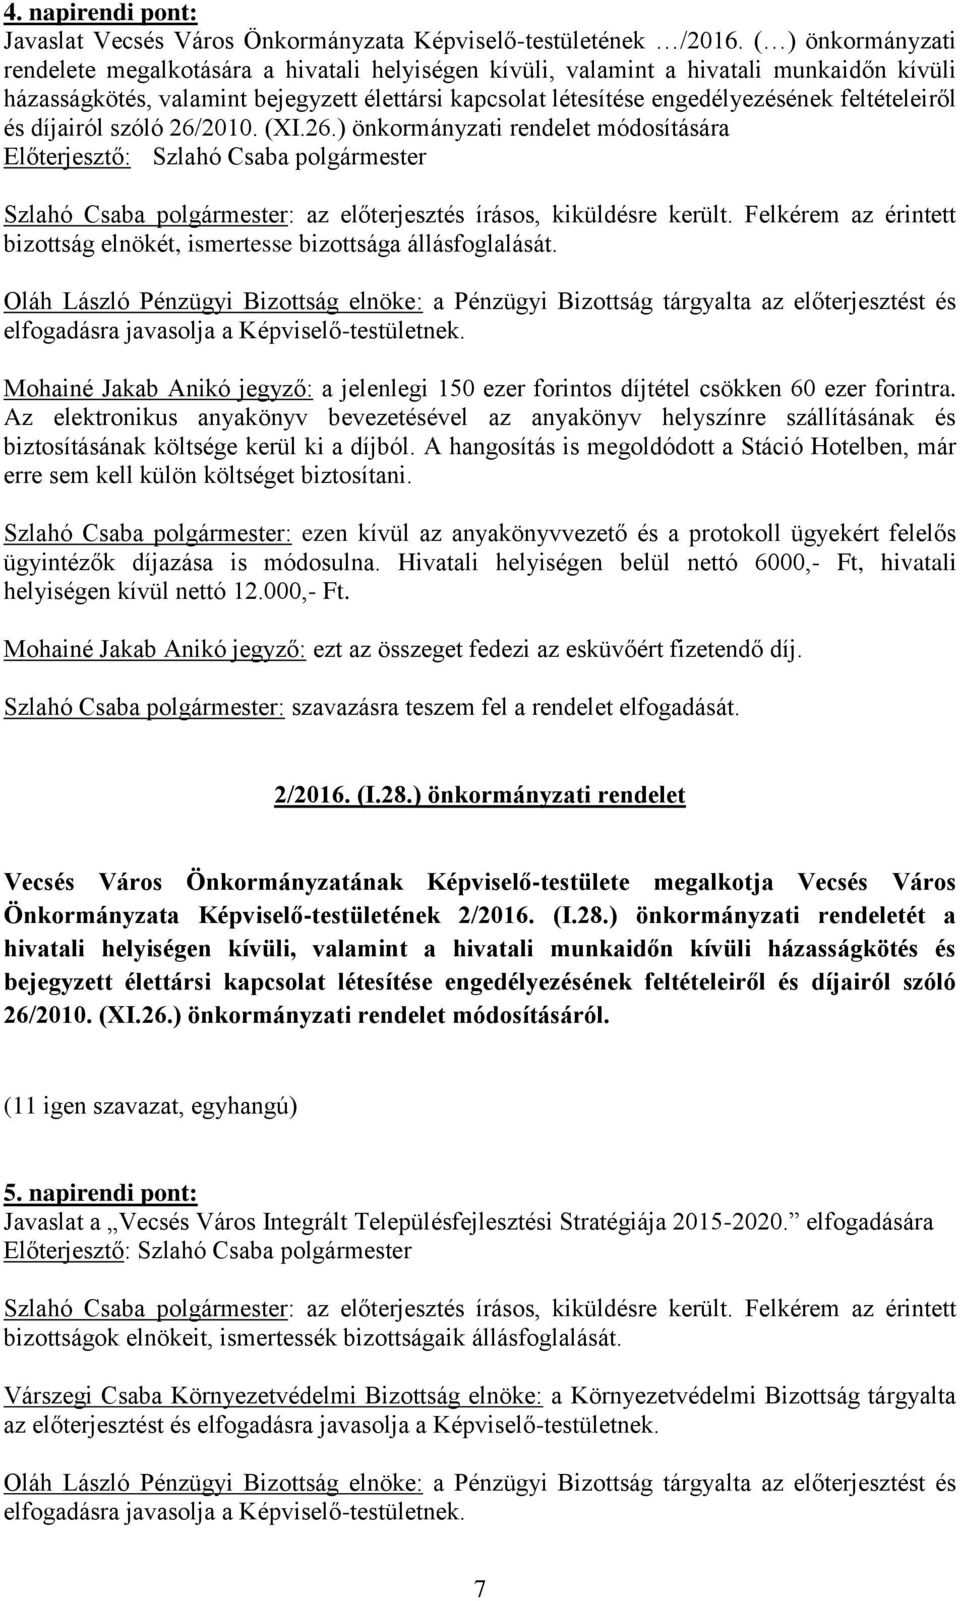 feltételeiről és díjairól szóló 26/2010. (XI.26.) önkormányzati rendelet módosítására Szlahó Csaba polgármester: az előterjesztés írásos, kiküldésre került.